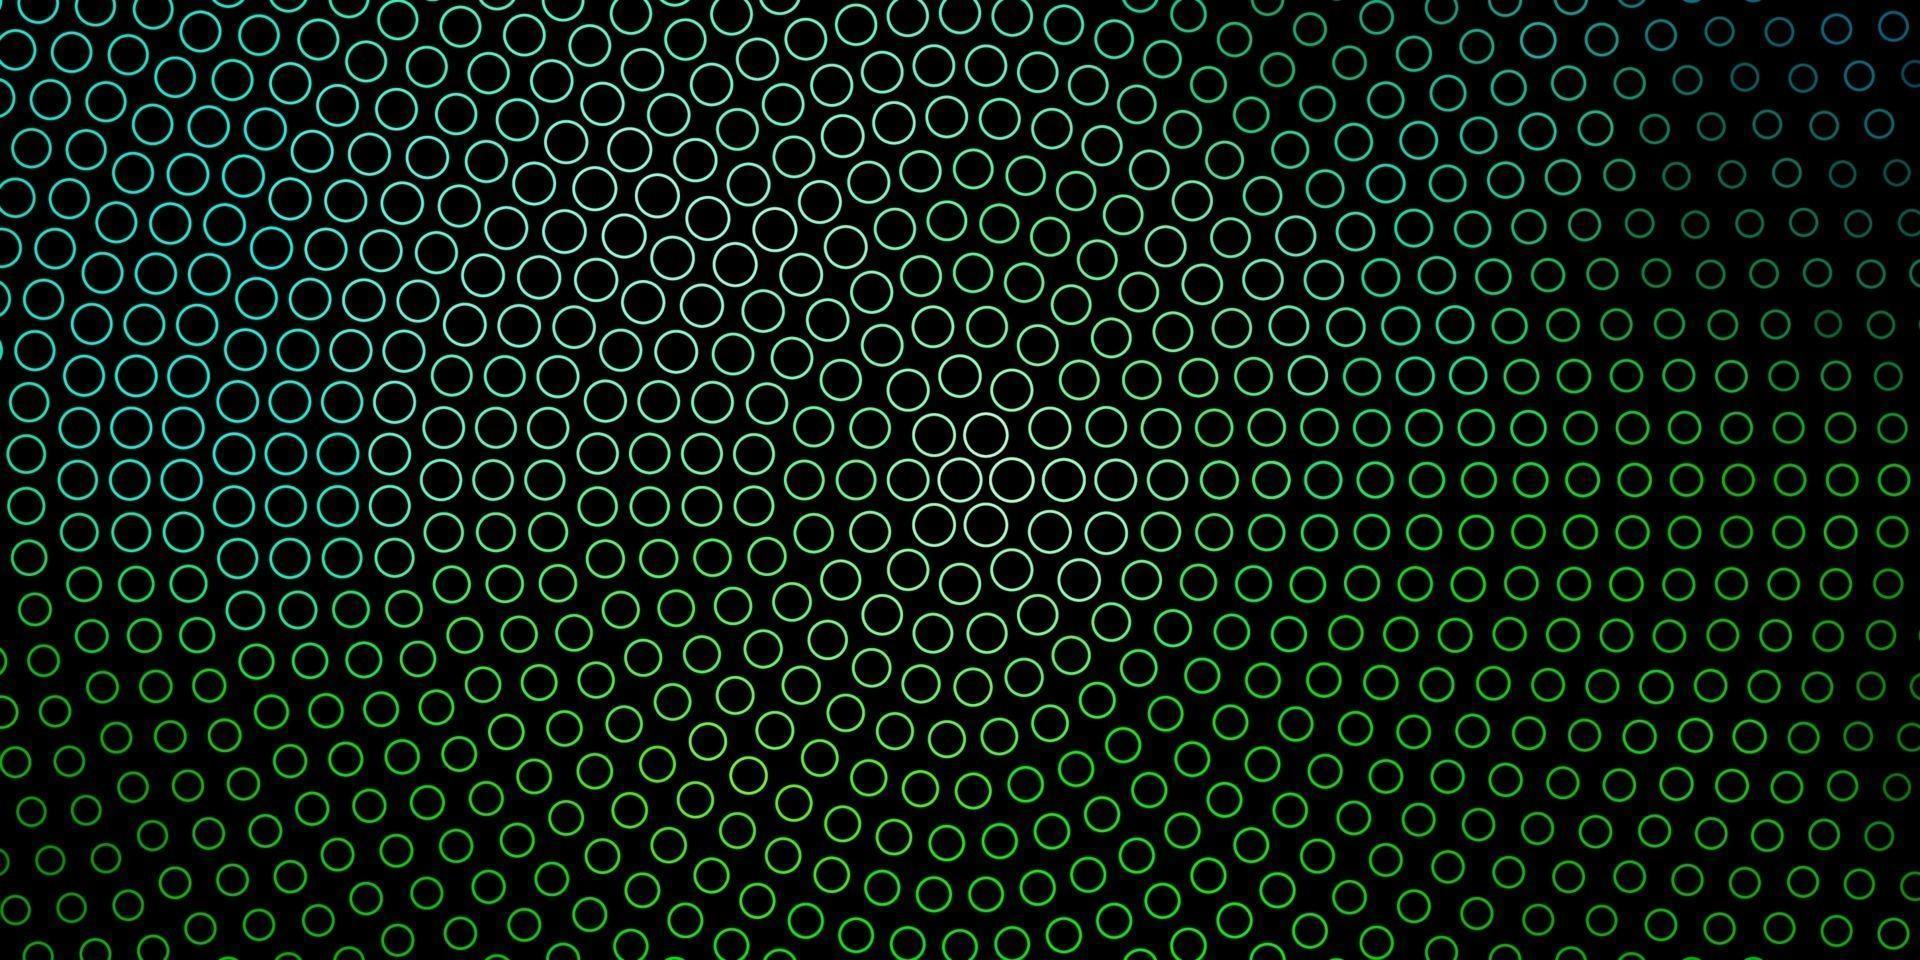 fond de vecteur vert foncé avec des cercles.